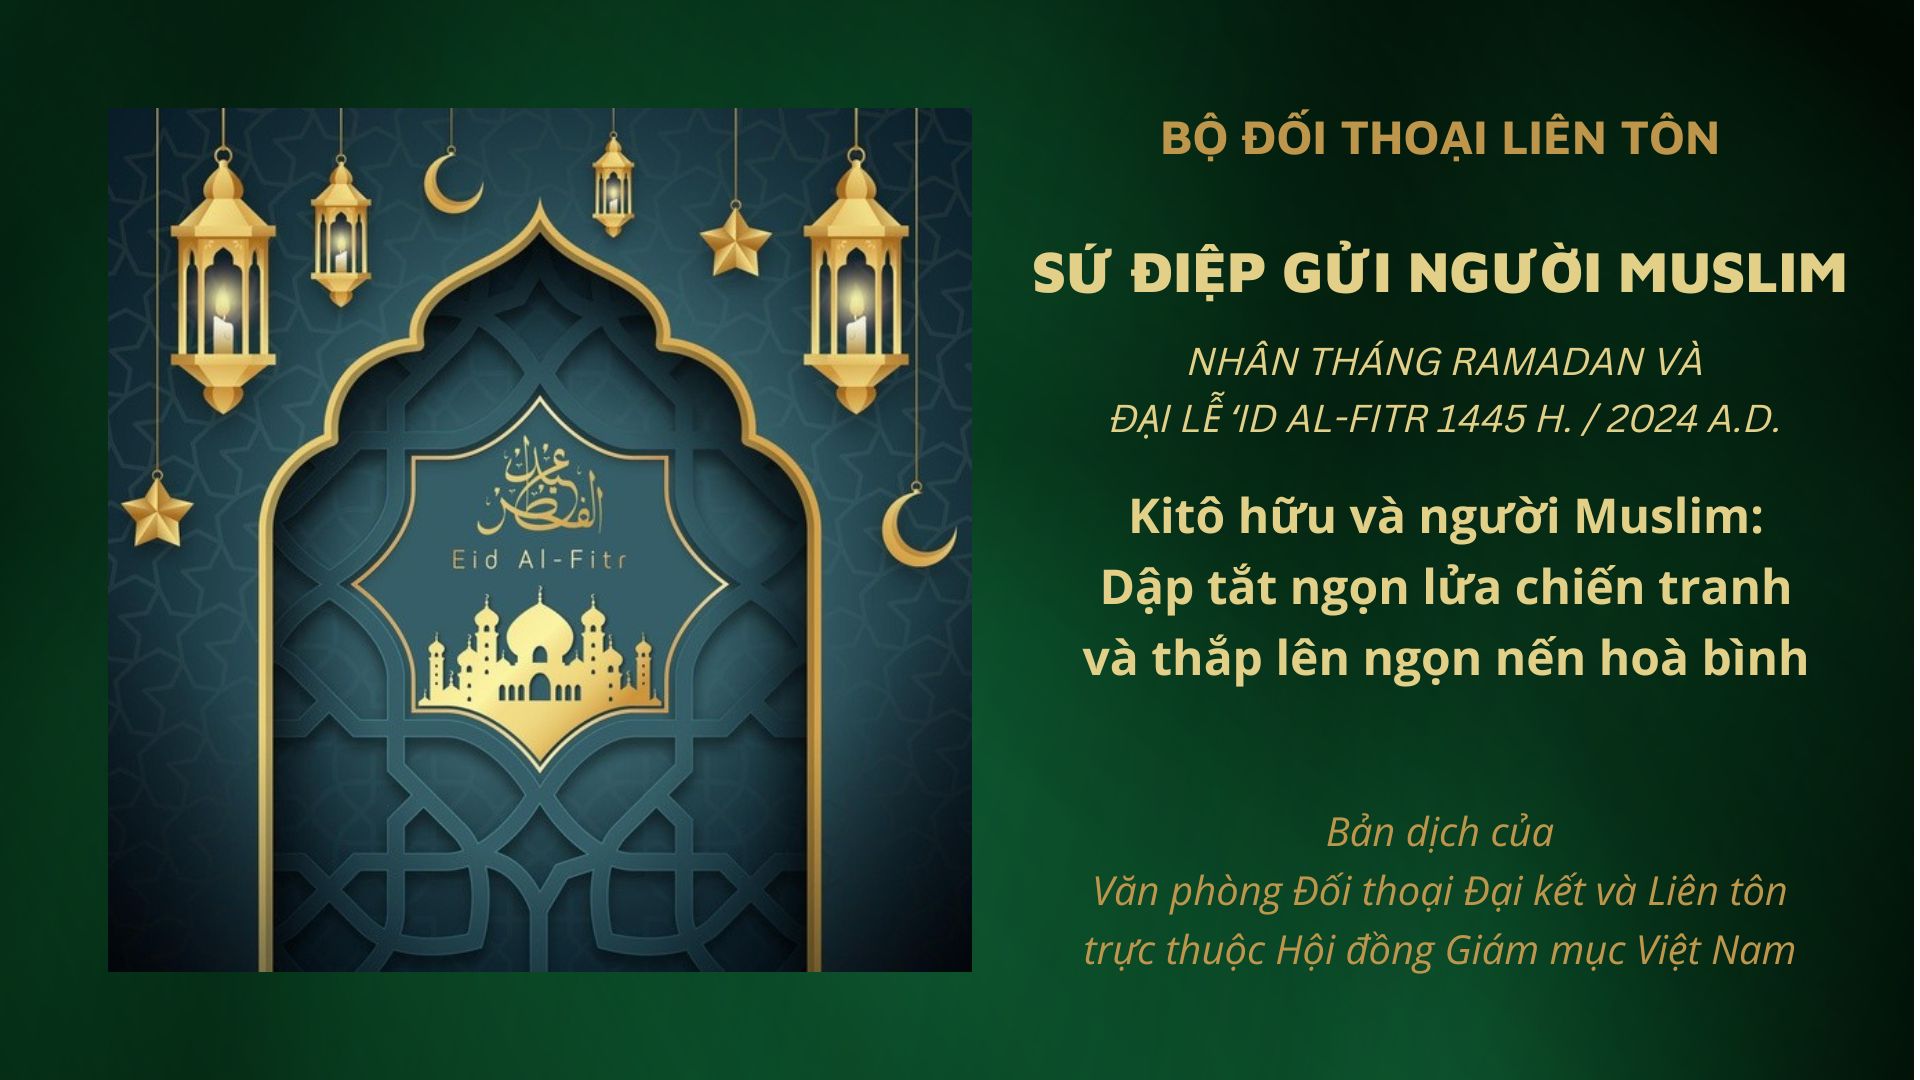 Sứ điệp gửi người Muslim nhân Tháng Ramadan và Đại lễ ‘Id al-Fitr năm 1445 H. / 2024 A.D